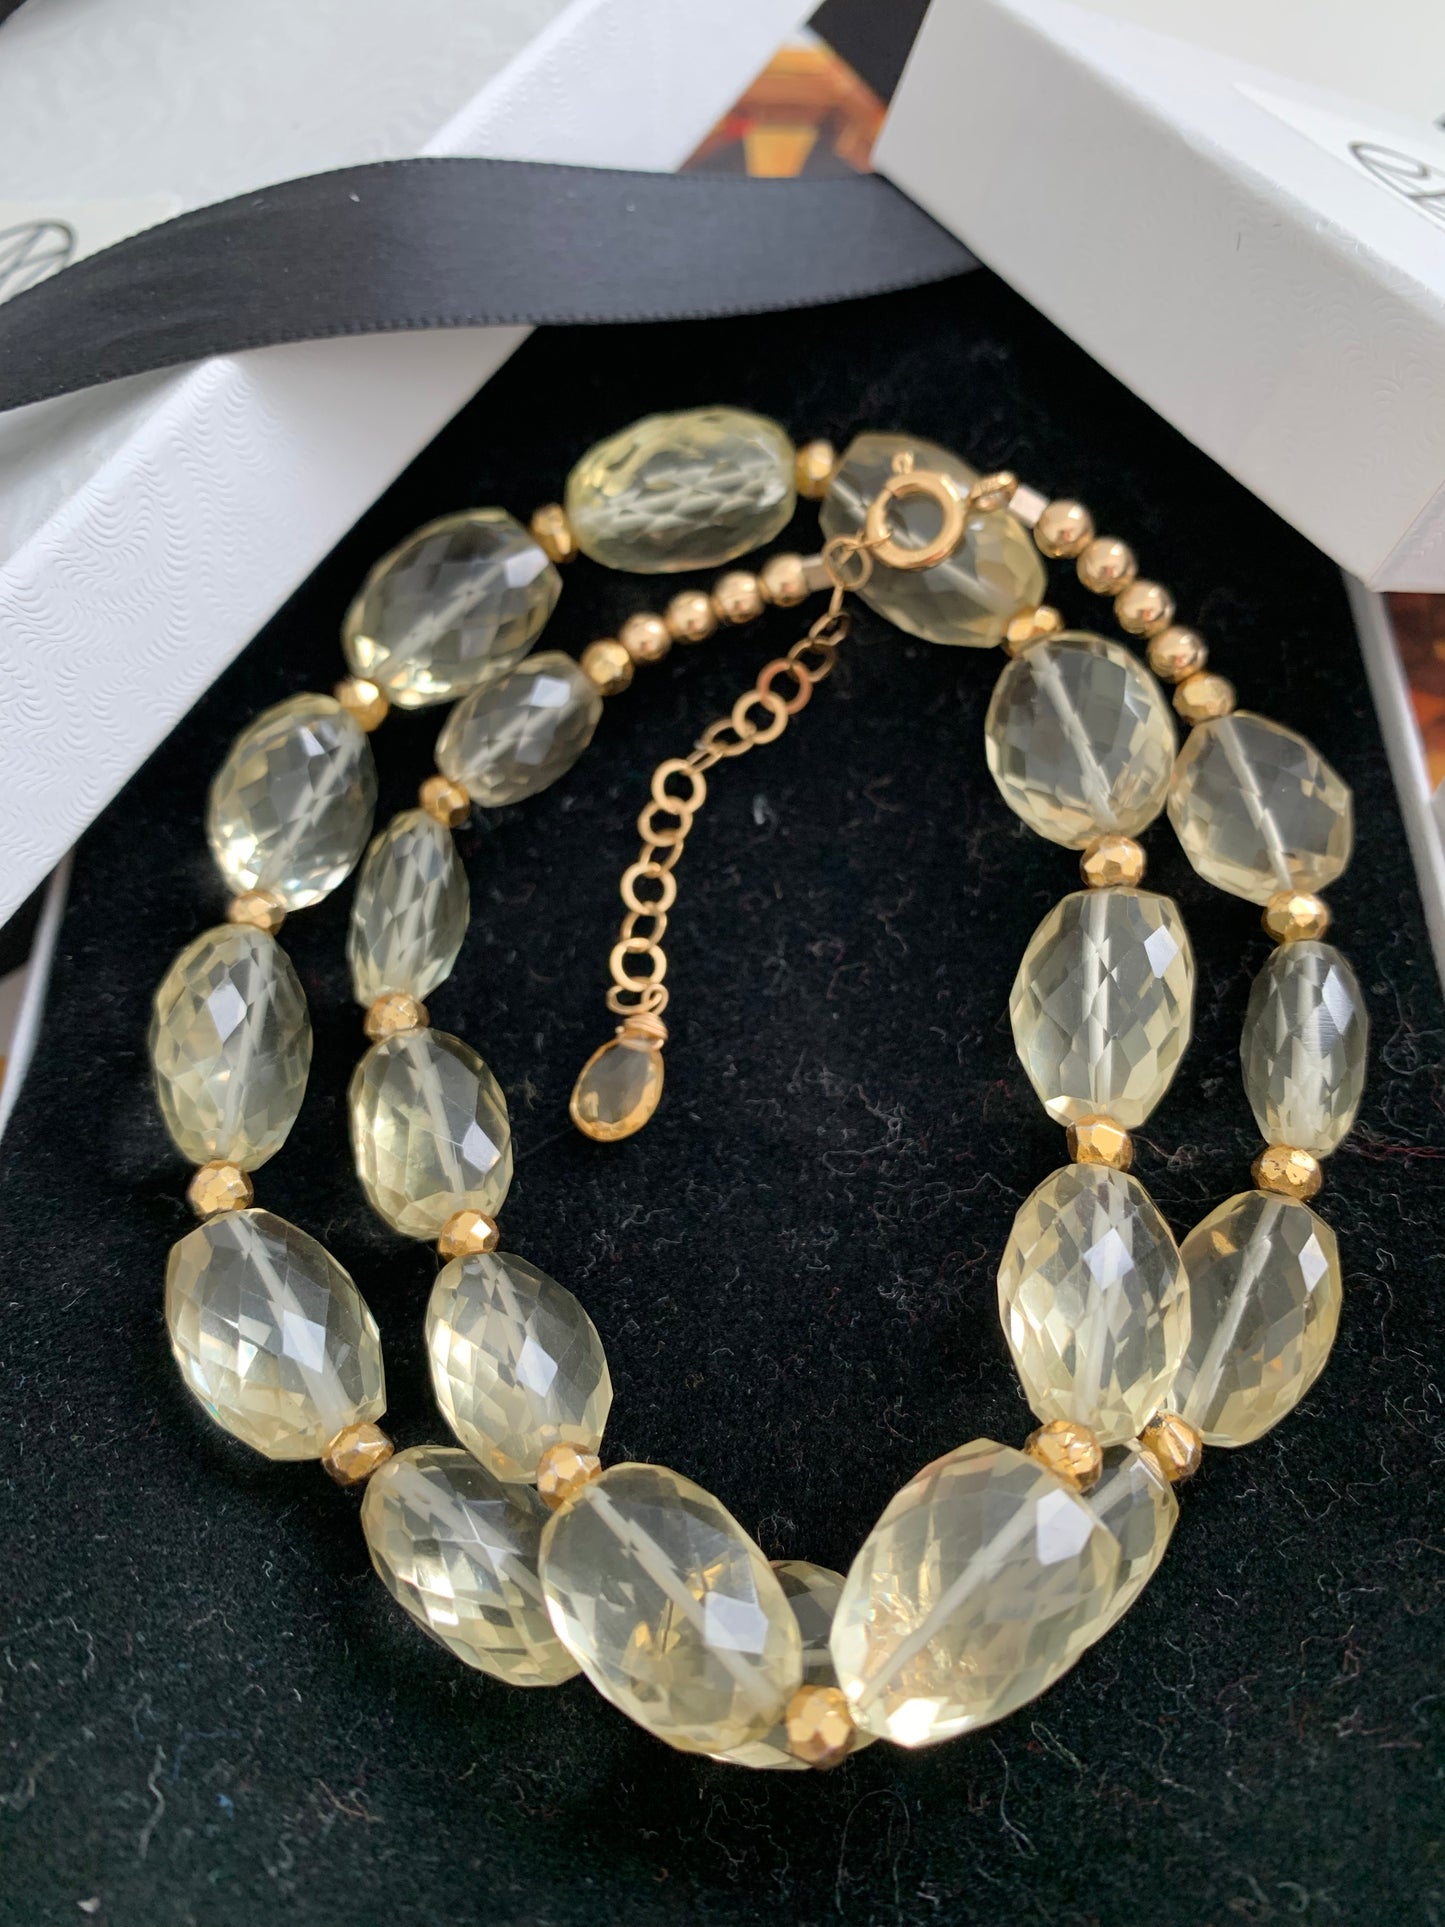 Faceted citrine necklace - Amaria Studio